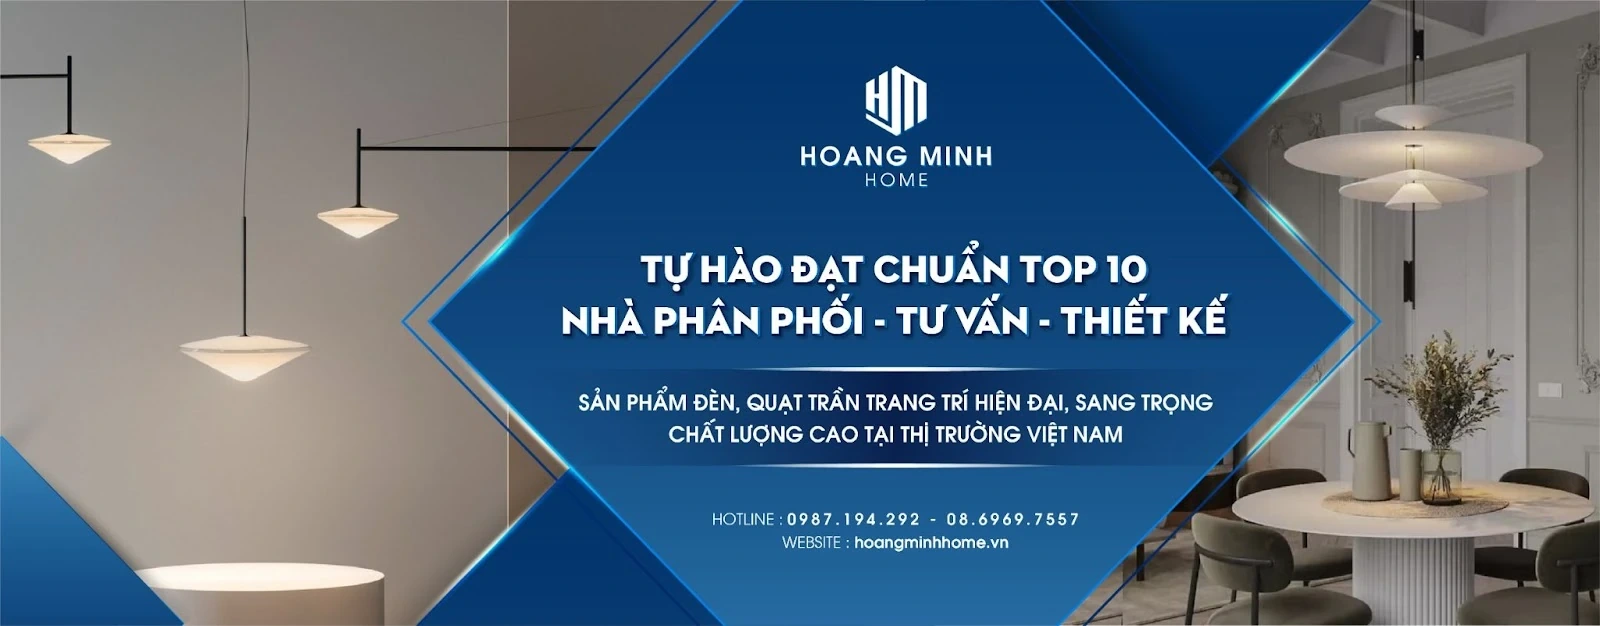 Hoàng Minh Home - nơi phân phối đồ nội thất chính hãng uy tín trên thị trường